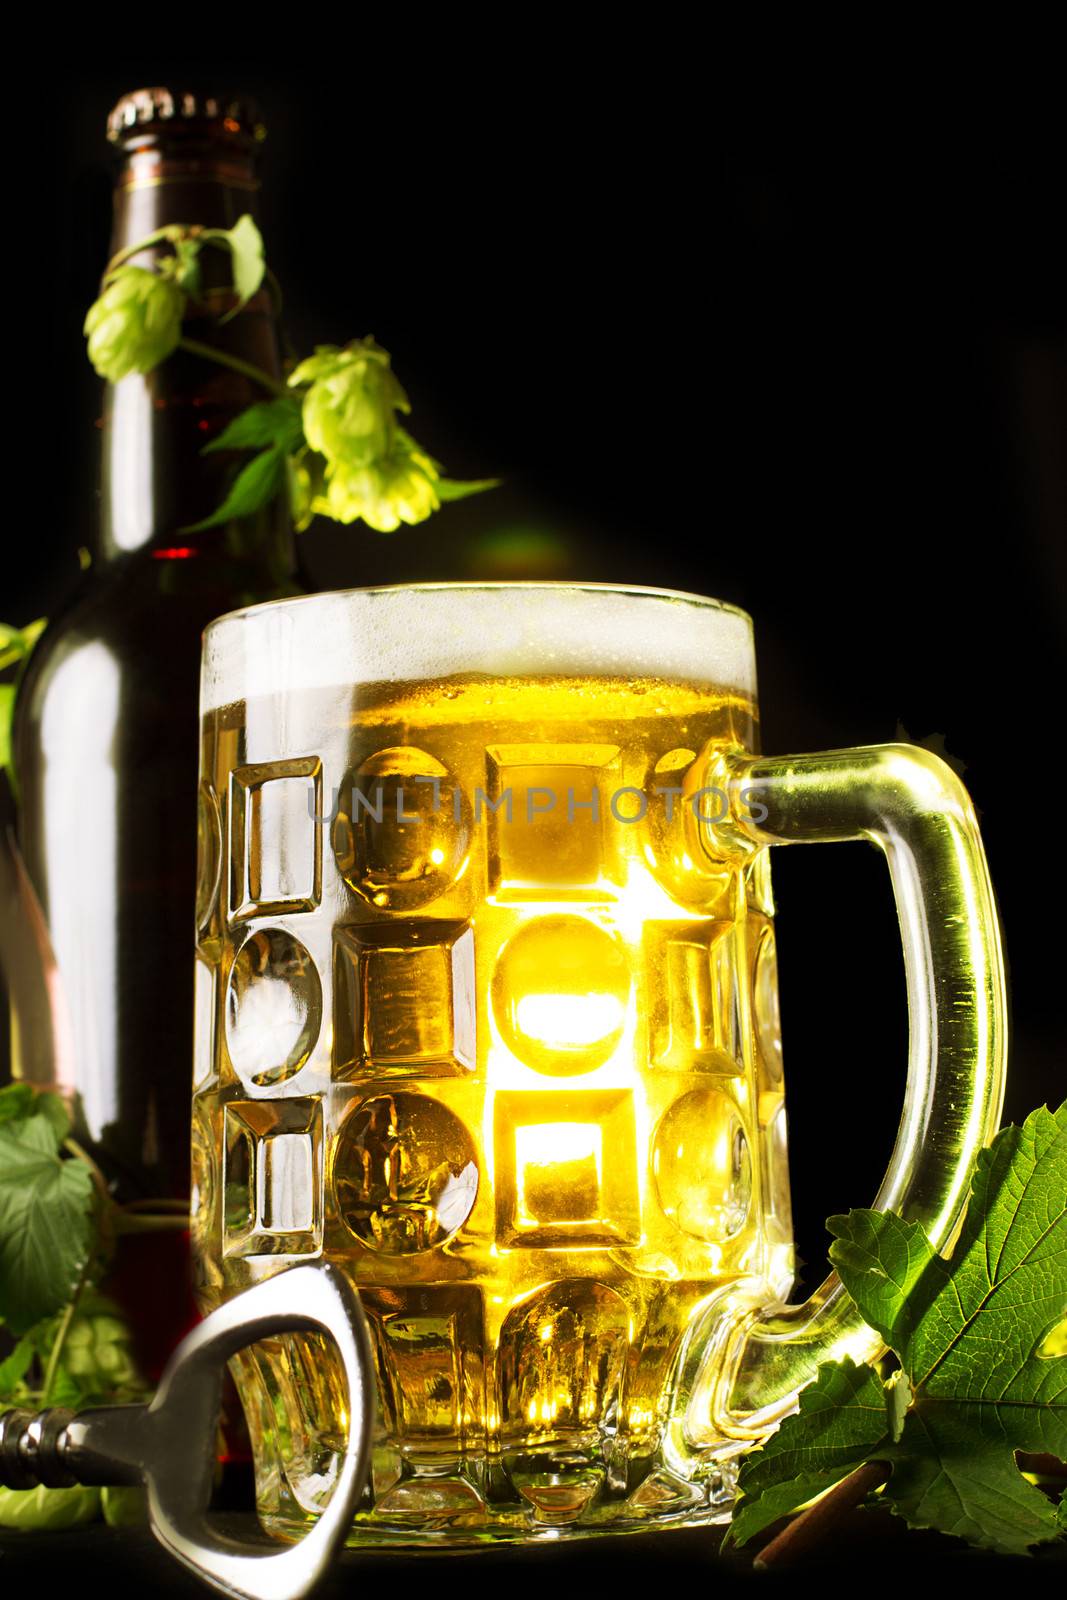 Mug of golden beer, bottle and openner with hop leaves over black